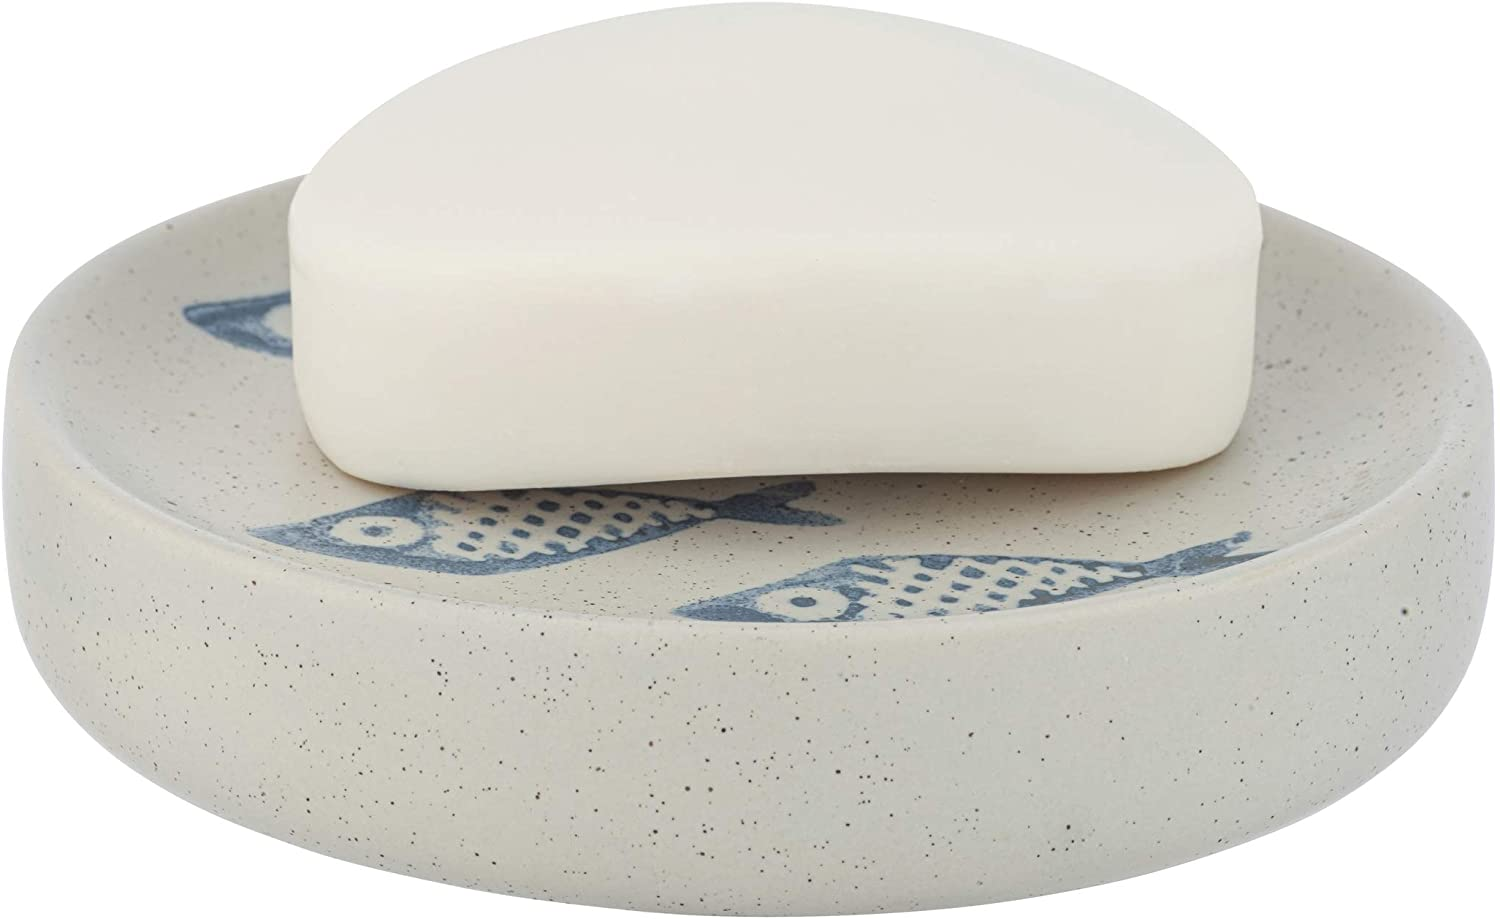 Seifenablage Aquamarin Keramik - Seifenschale zur Aufbewahrung von Handseife, Keramik, 12 x 3 x 12 cm, Beige